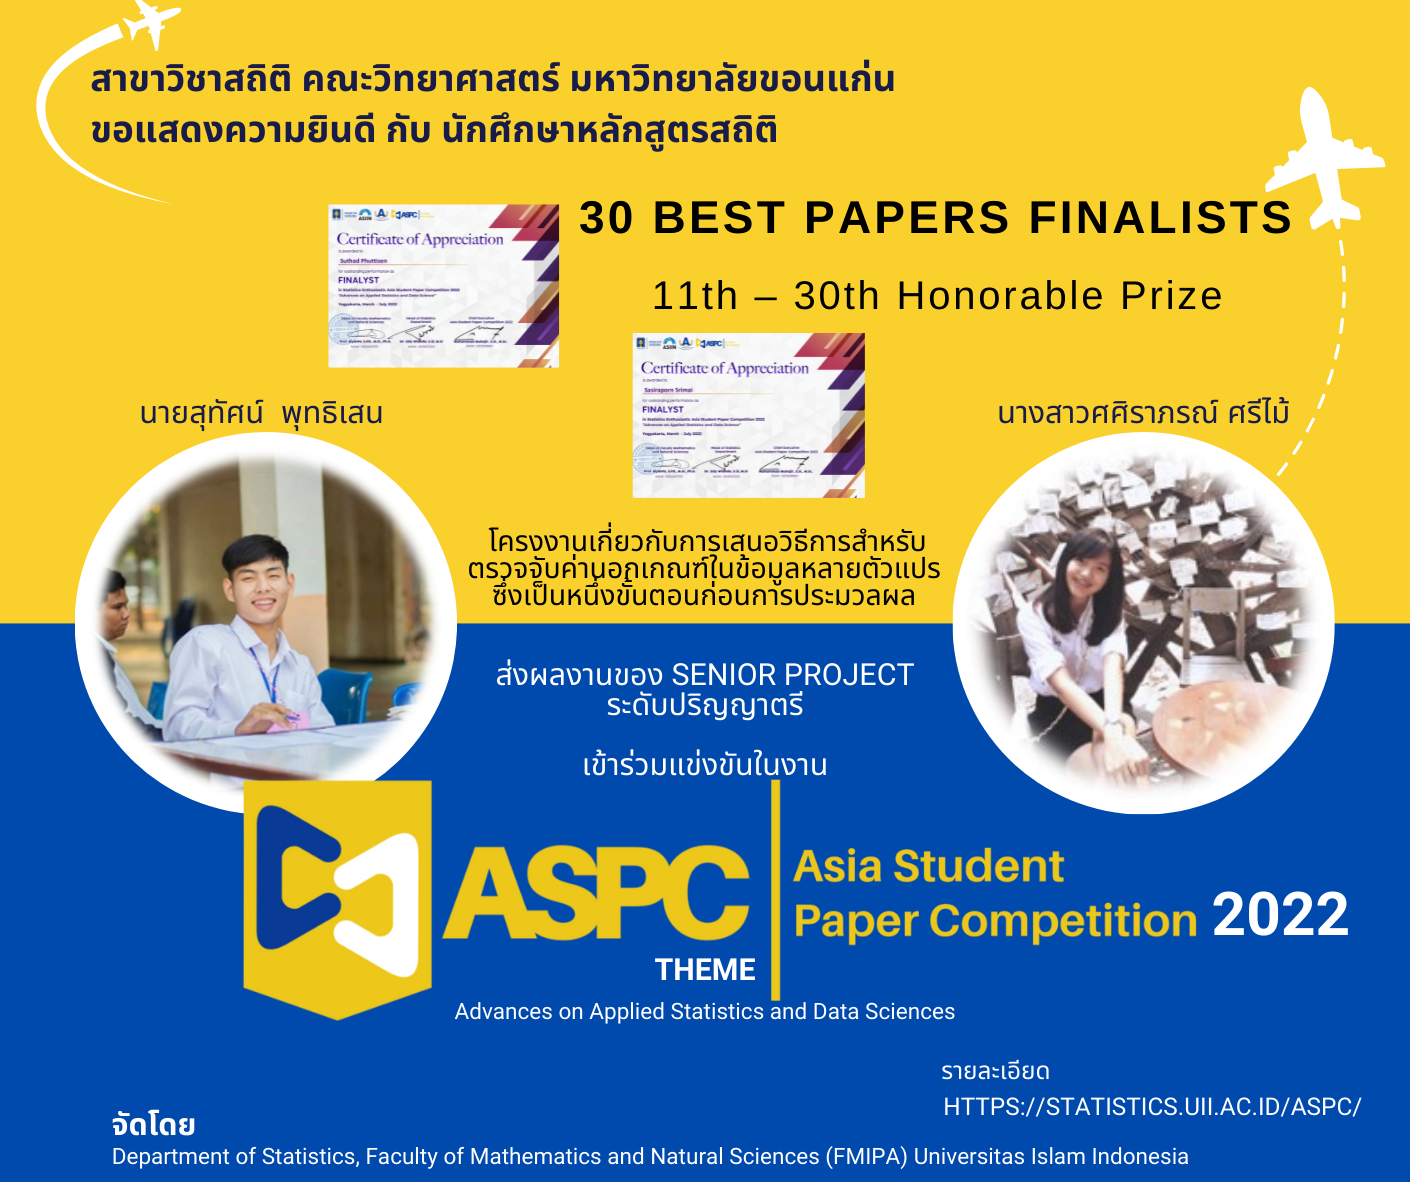 ขอแสดงความยินดีกับนักศึกษาสาขาวิชาสถิติ ที่ได้รับคัดเลือก เป็น 30 best papers finalists (11th – 30th Honorable Prize) 